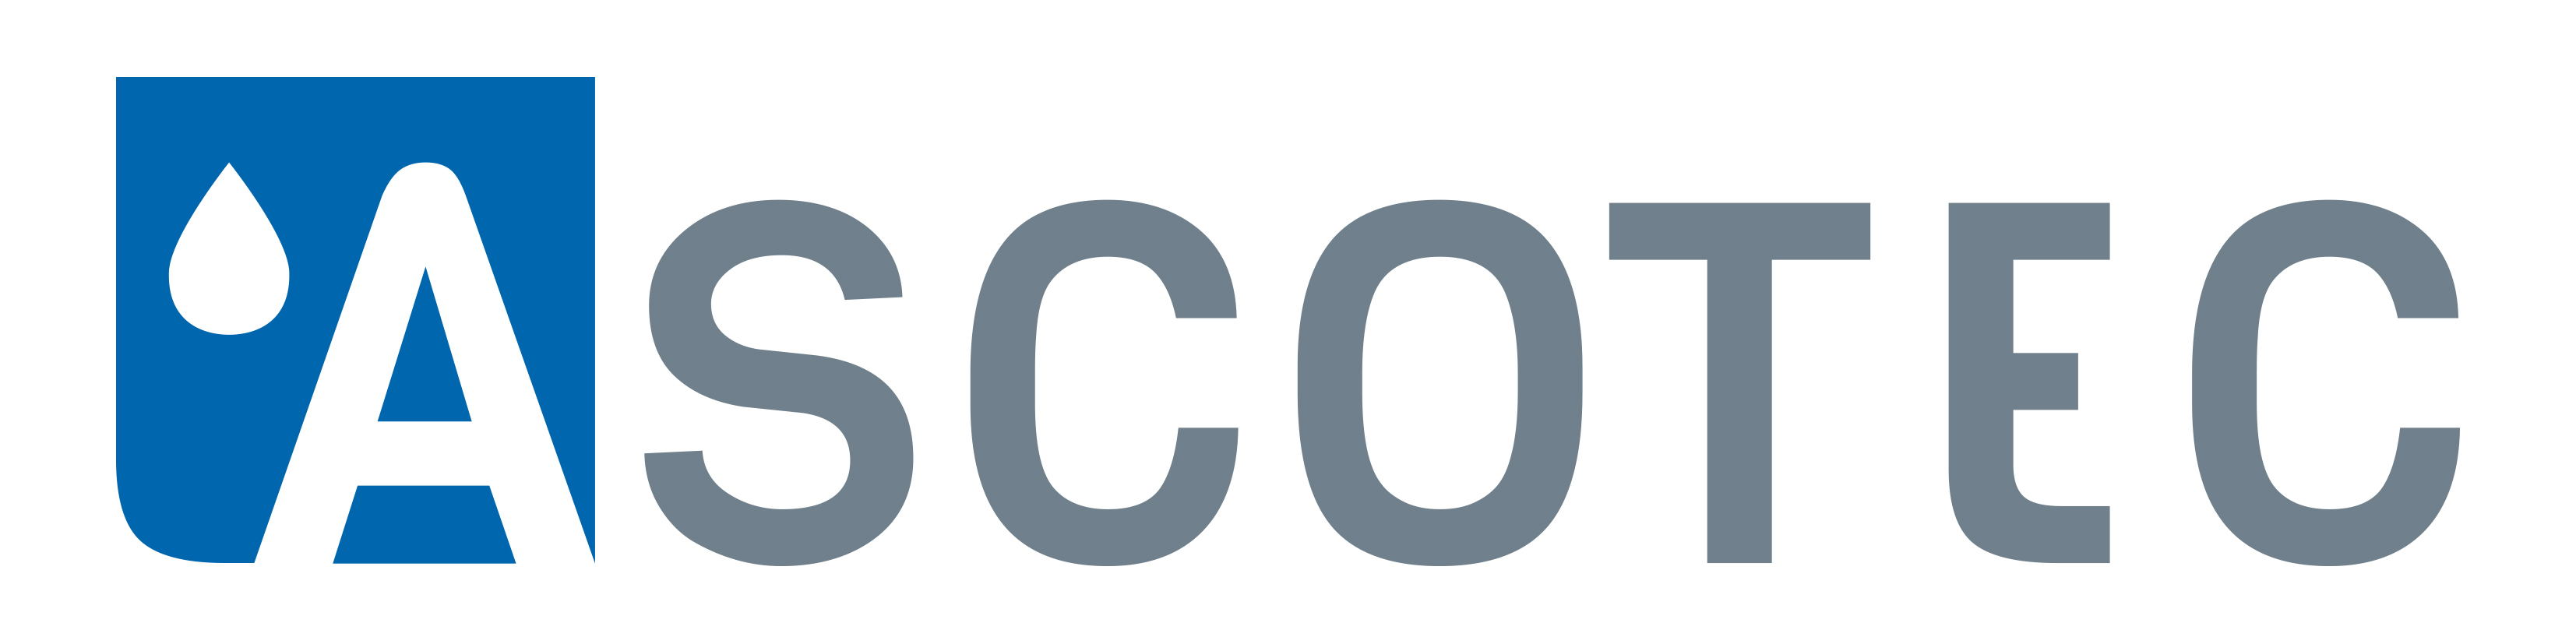 ASCOTEC_logo